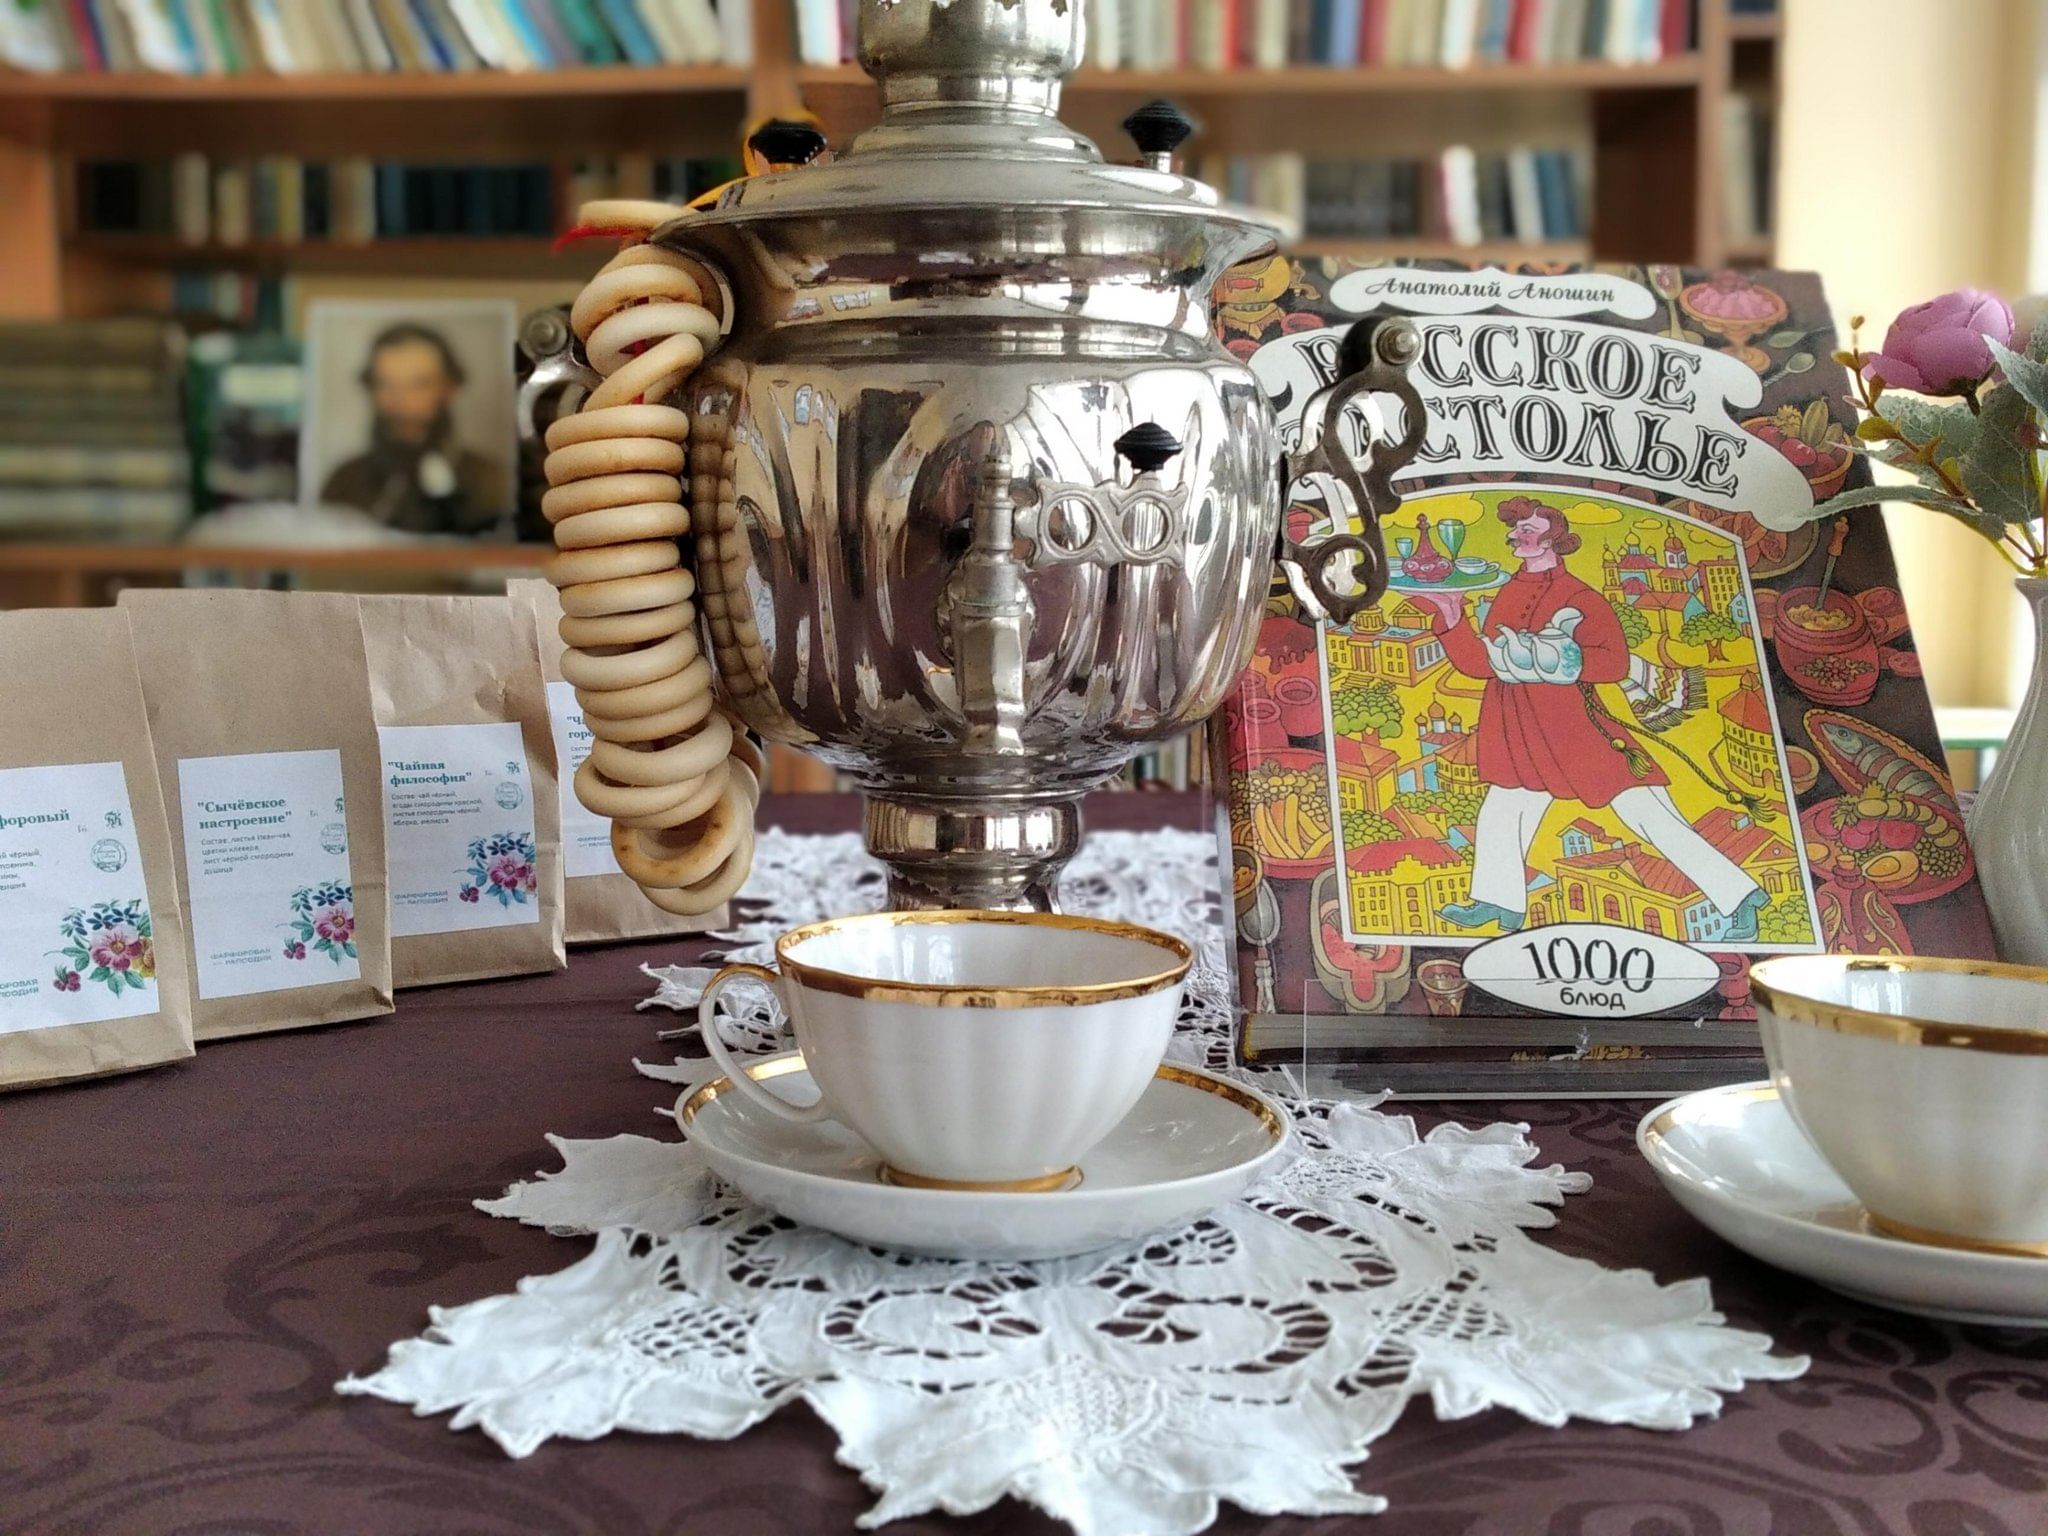 Программа чаепития. Традиции чаепития в Англии. Традиции чаепития в Узбекистане. Объявление конкурсная программ с чаепитием.